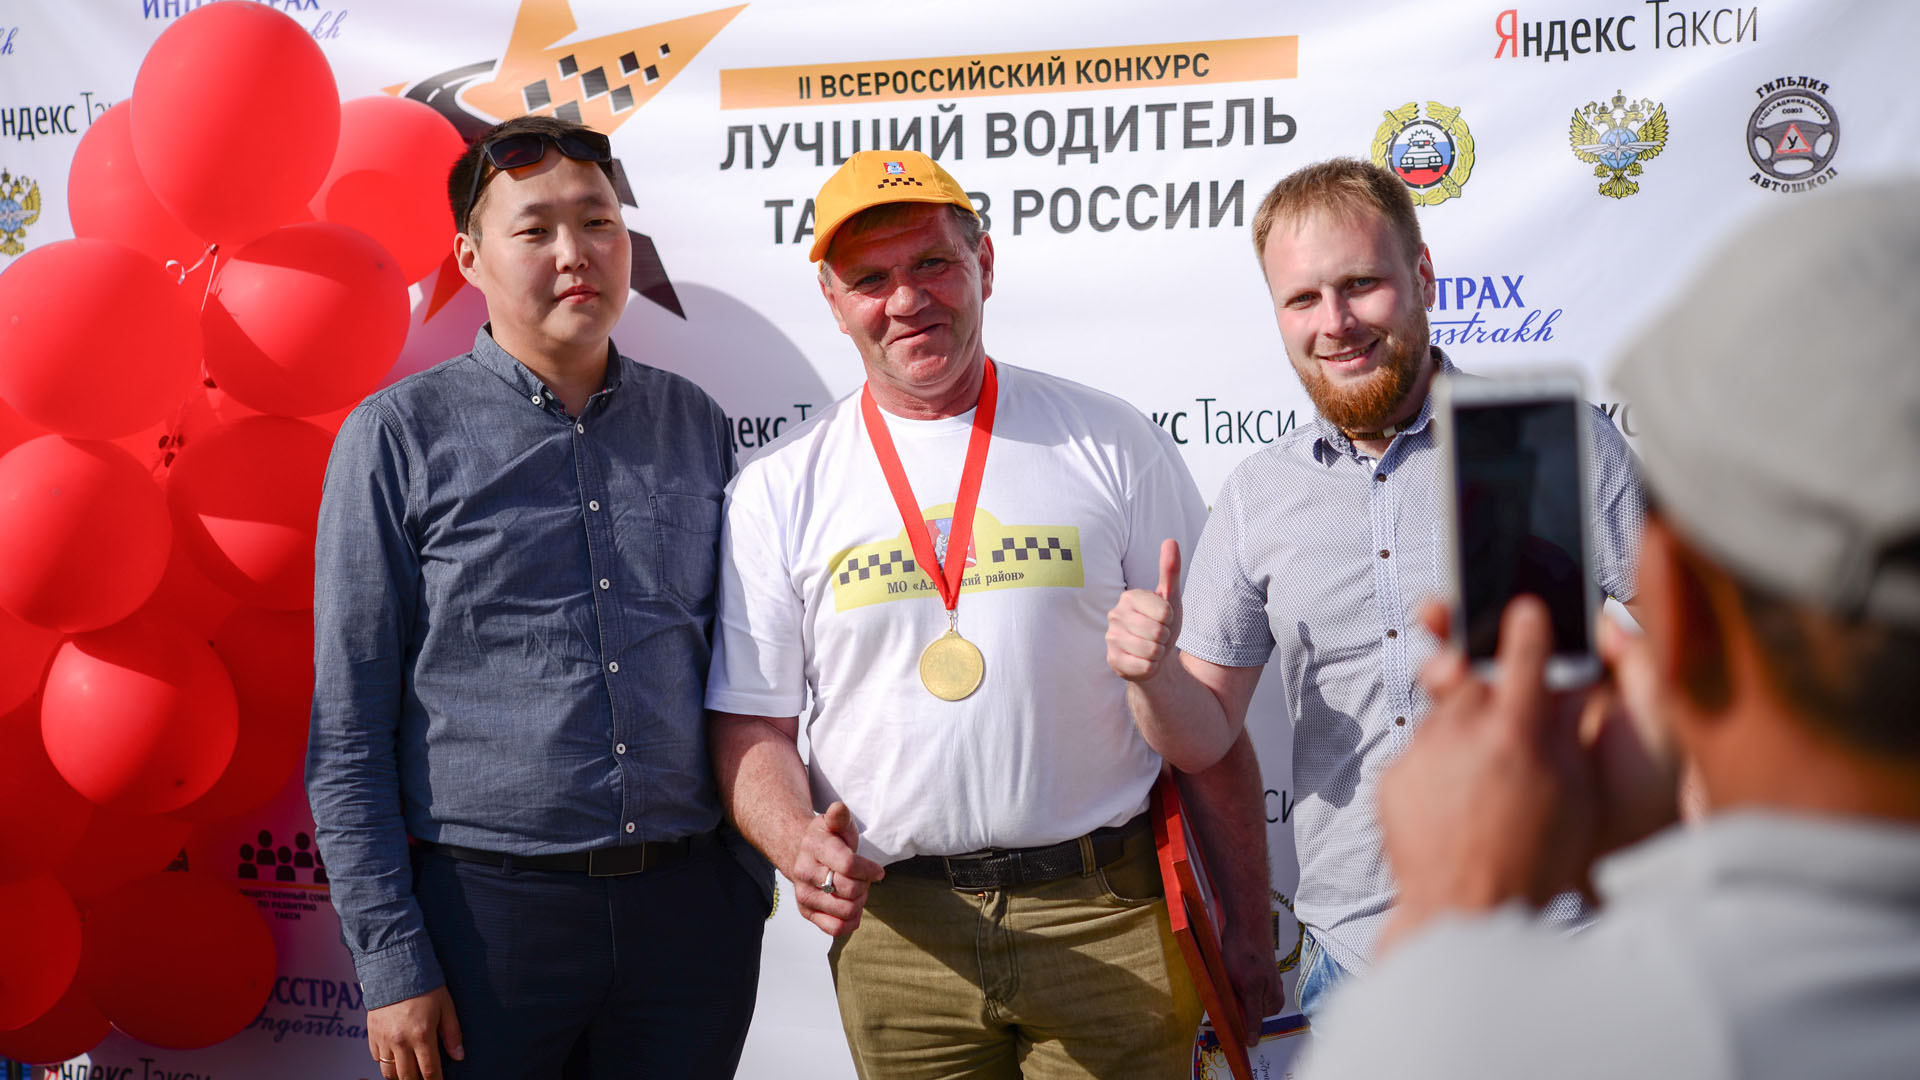 Якутск ТВ: в республике выбрали лучшего водителя такси